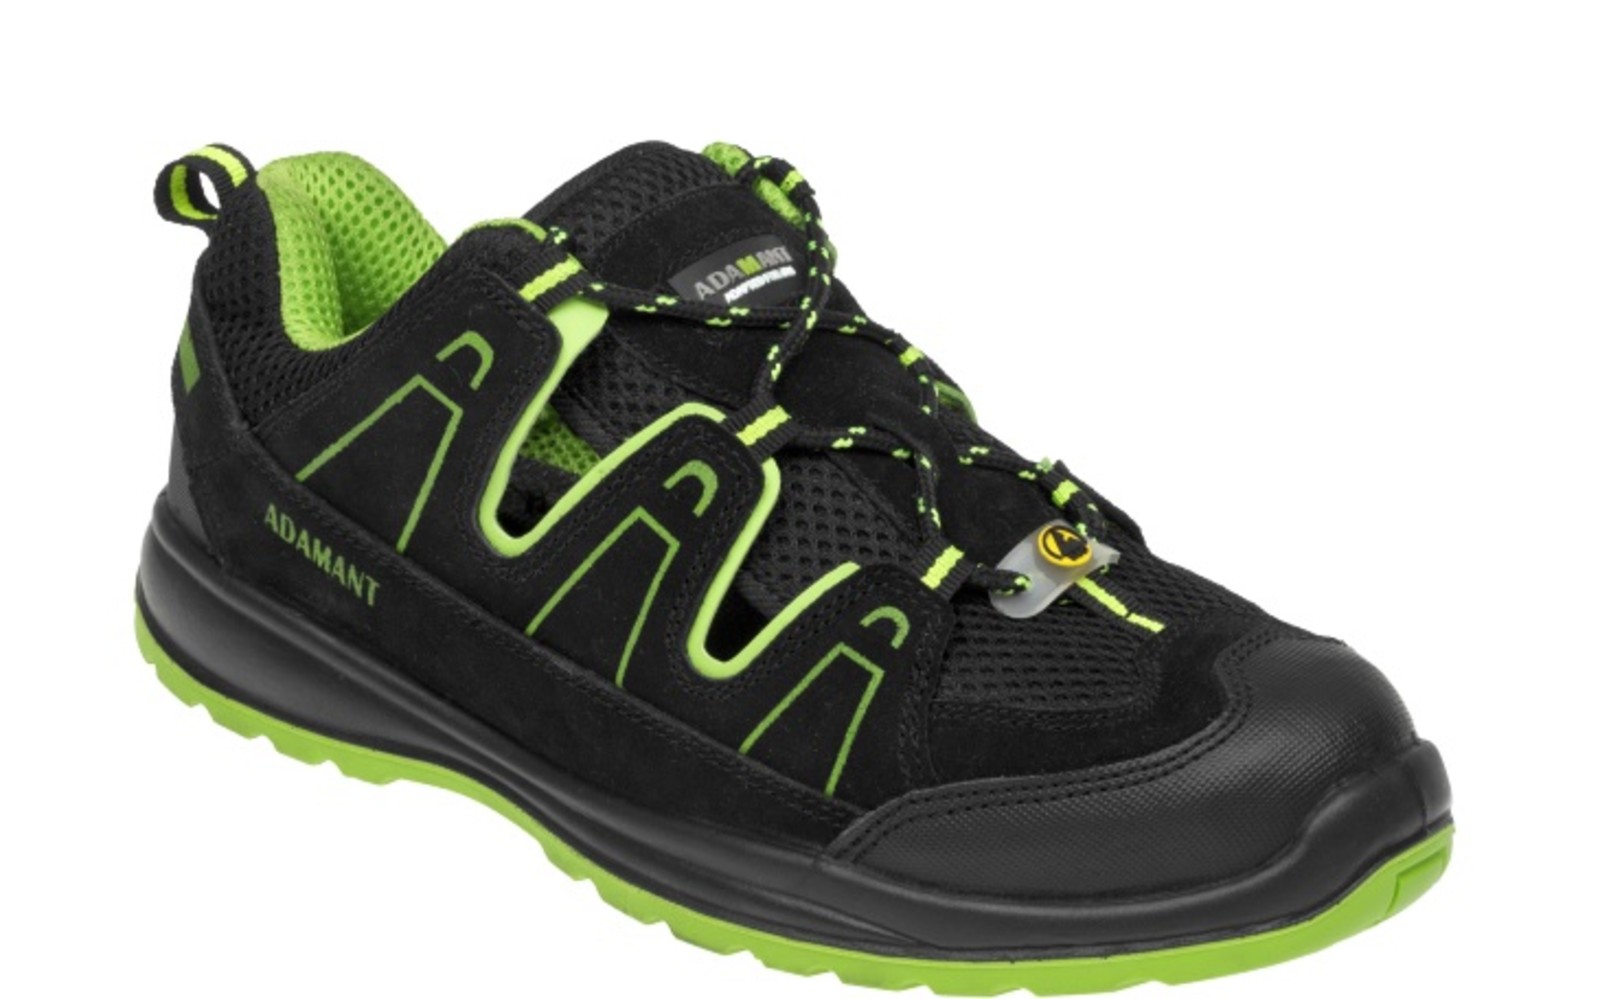 Bezpečnostné sandále Adamant Alegro S1 ESD - veľkosť: 36, farba: čierna/zelená